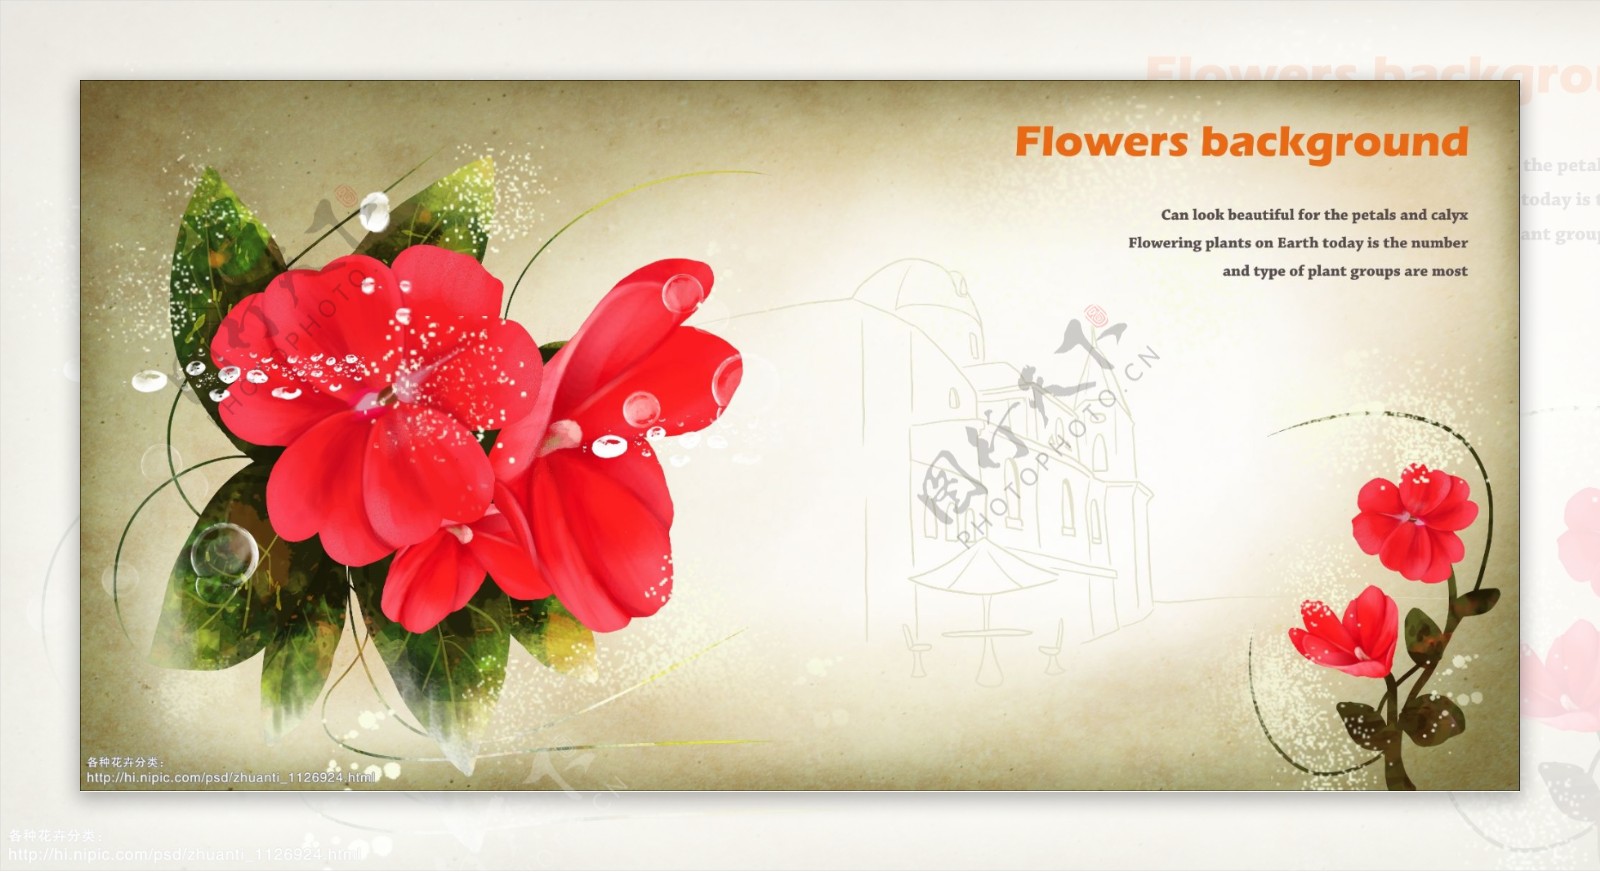 花卉插画图片